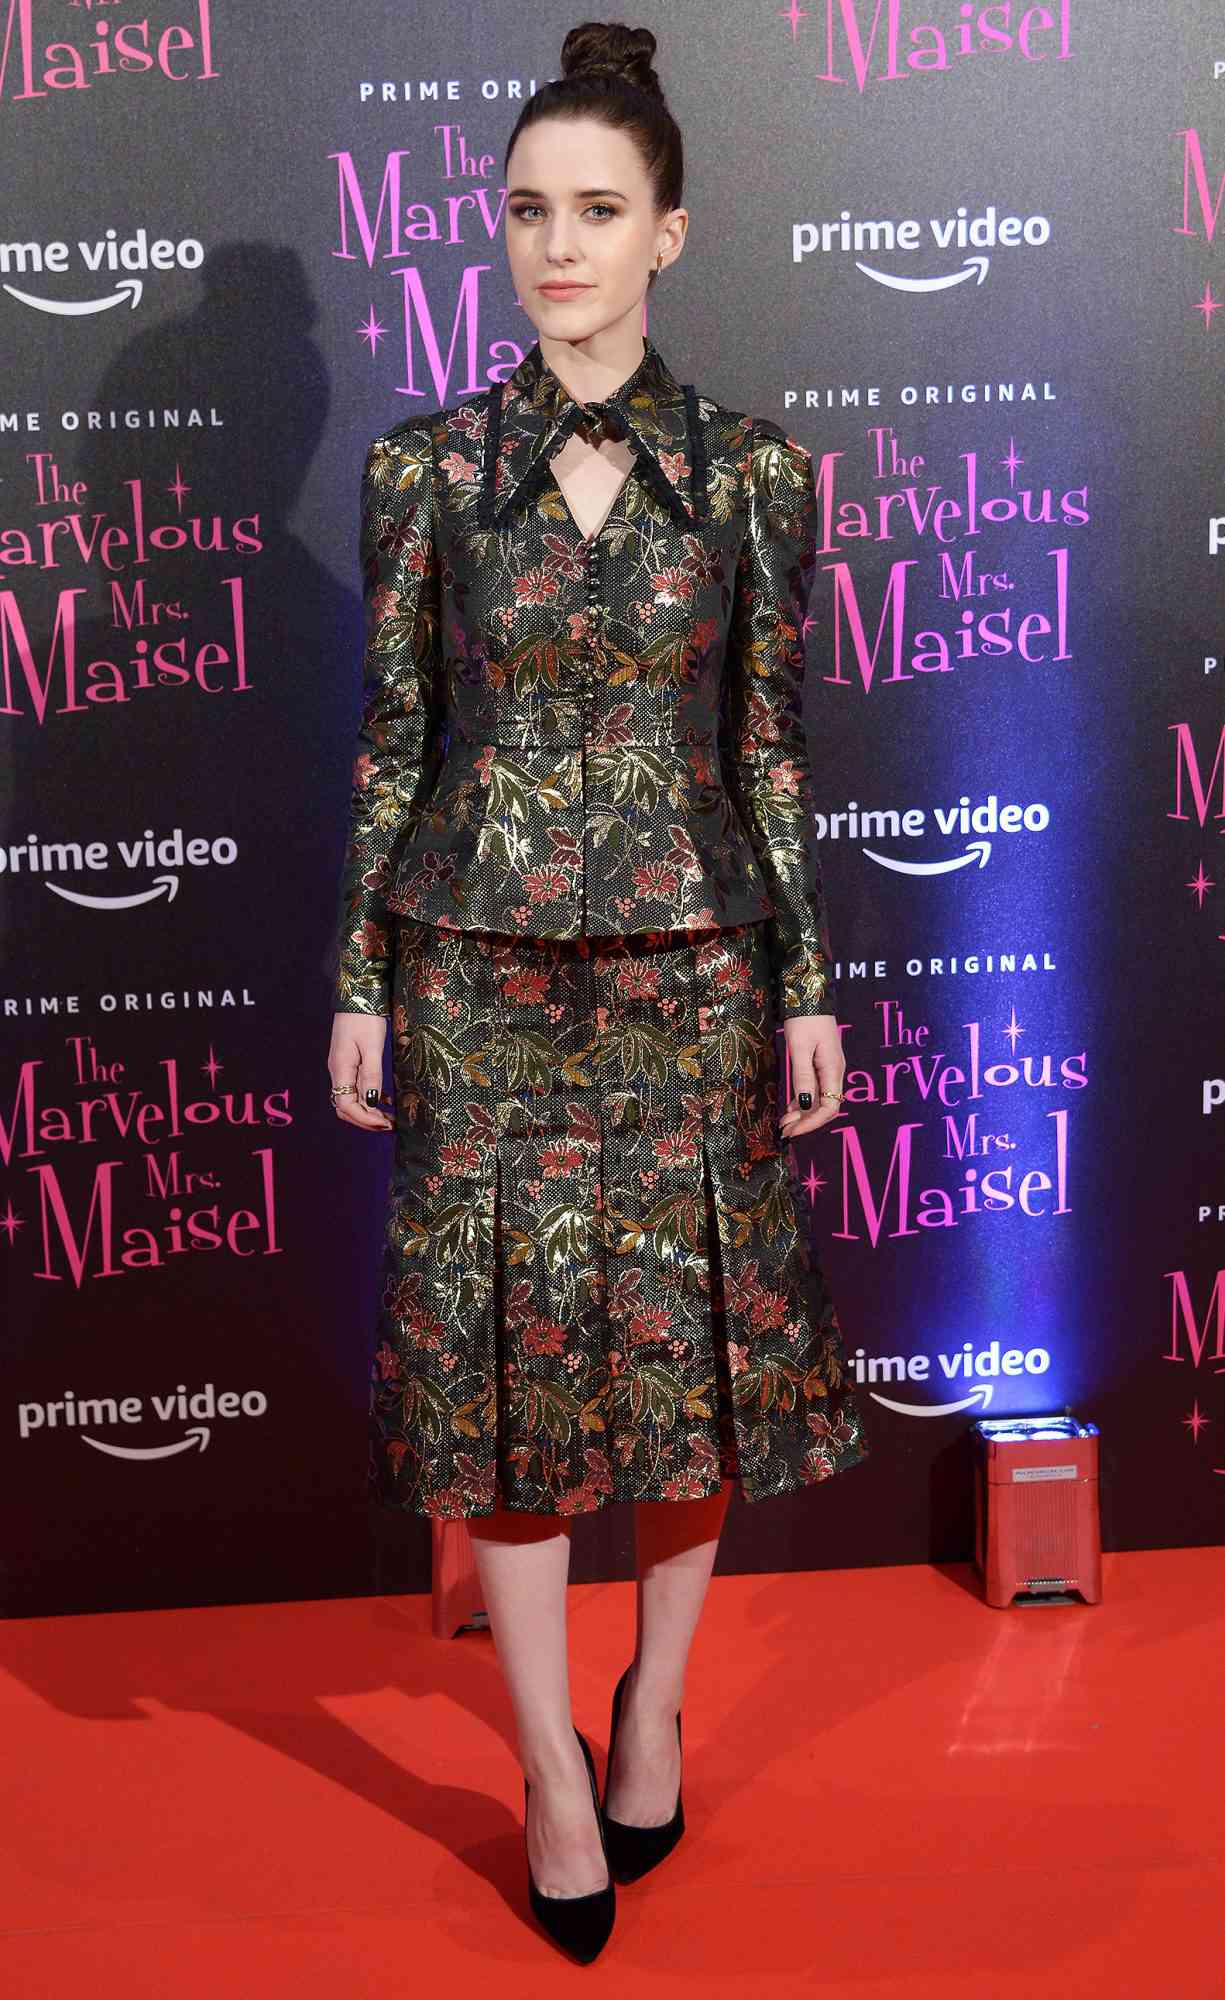 'The Marvelous Mrs. Maisel' TV show premiere, Arrivals, Milan, Italy - 03 Dec 2018